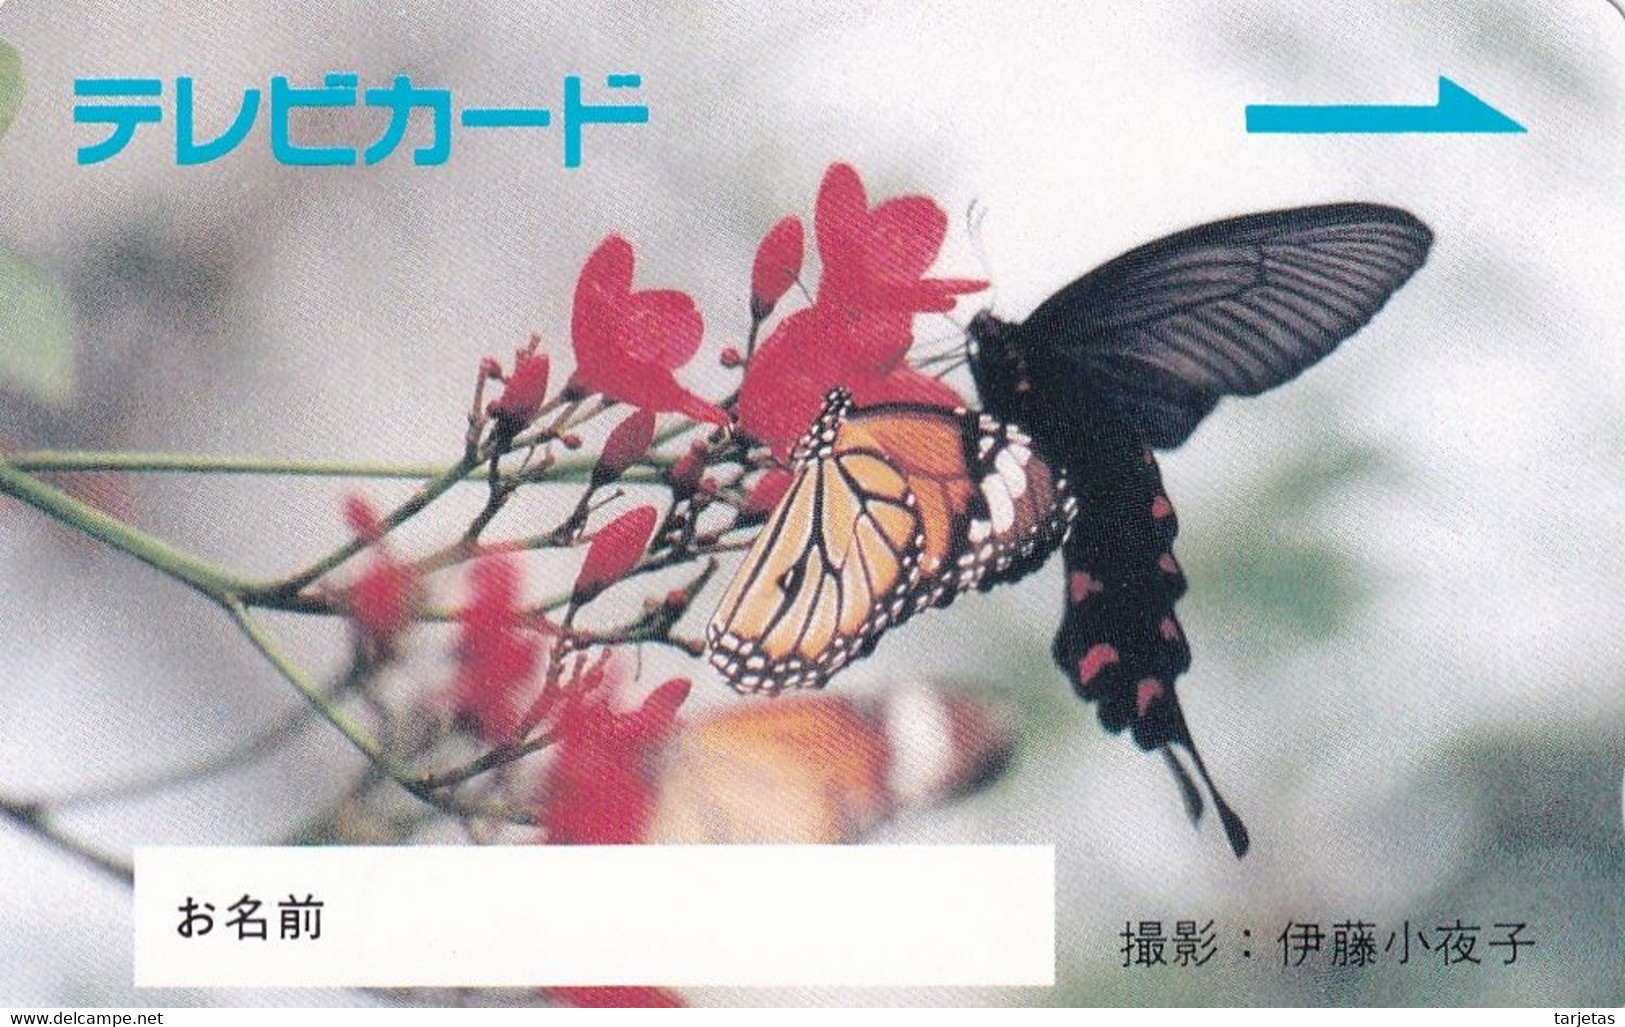 TARJETA DE JAPON DE UNA MARIPOSA (BUTTERFLY)  (no Es Tarjeta Telefonica) - Farfalle